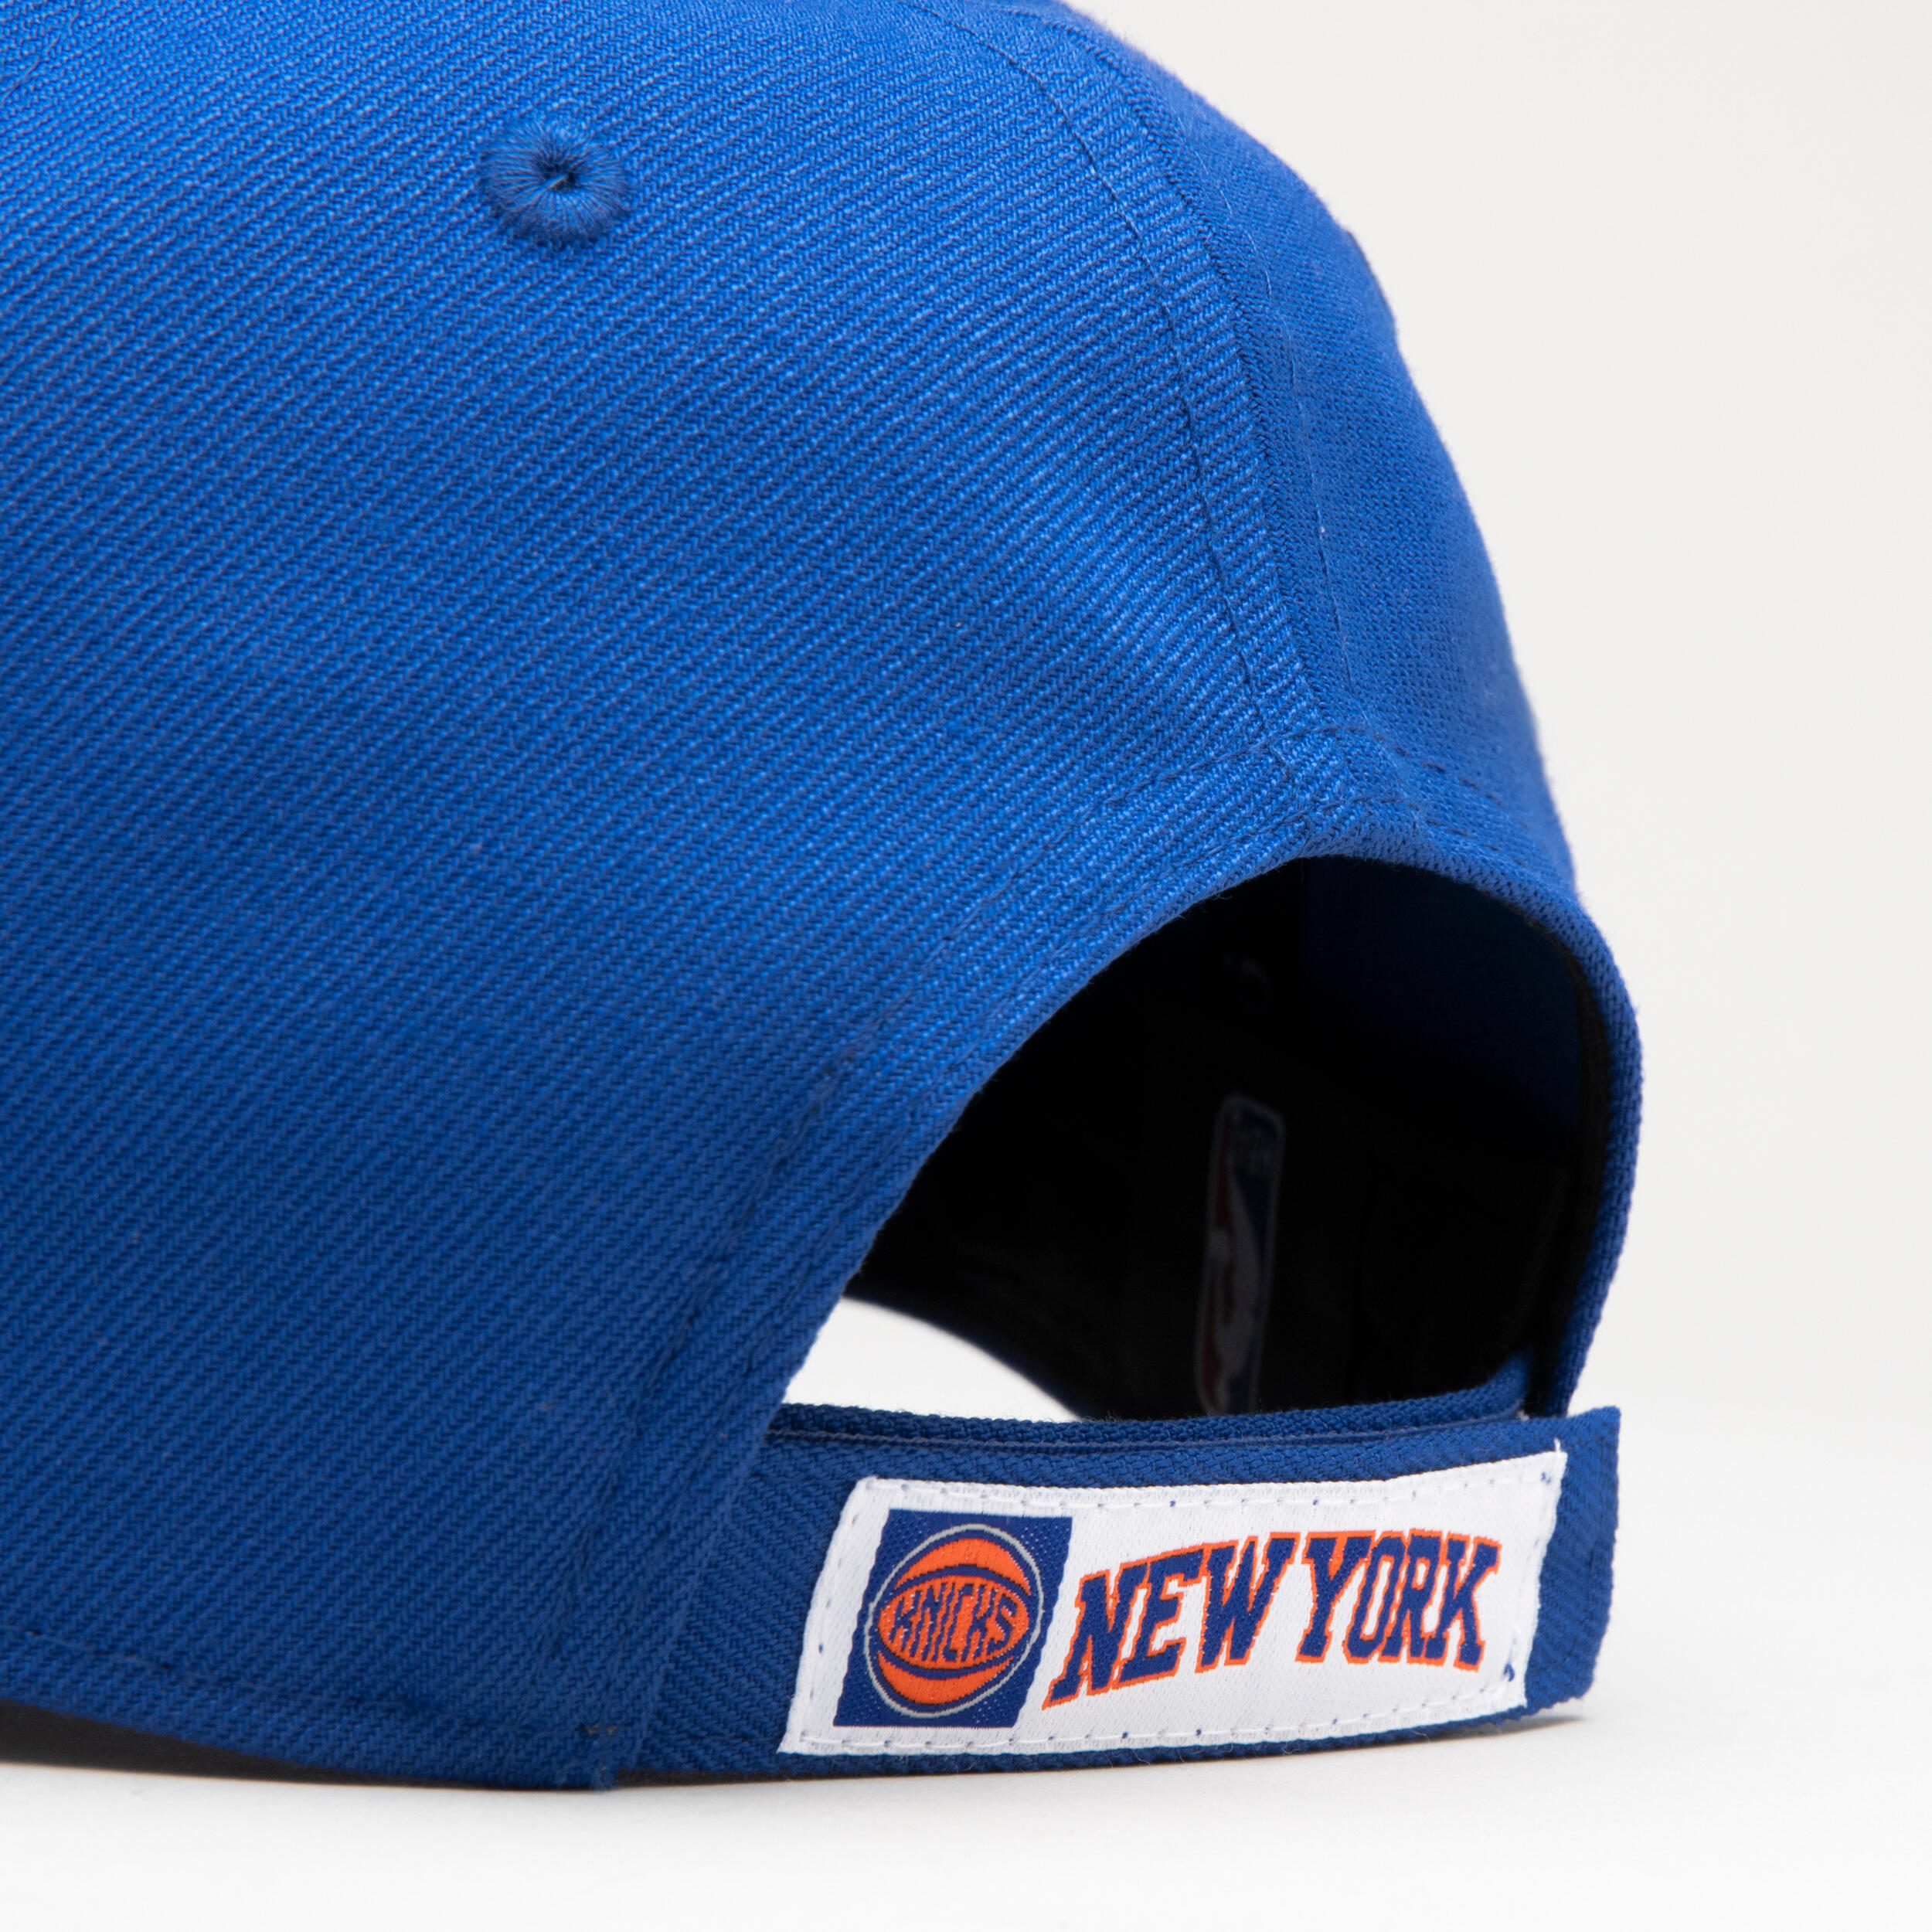 Men's/Women's Basketball Cap NBA - New York Knicks/Blue 6/7